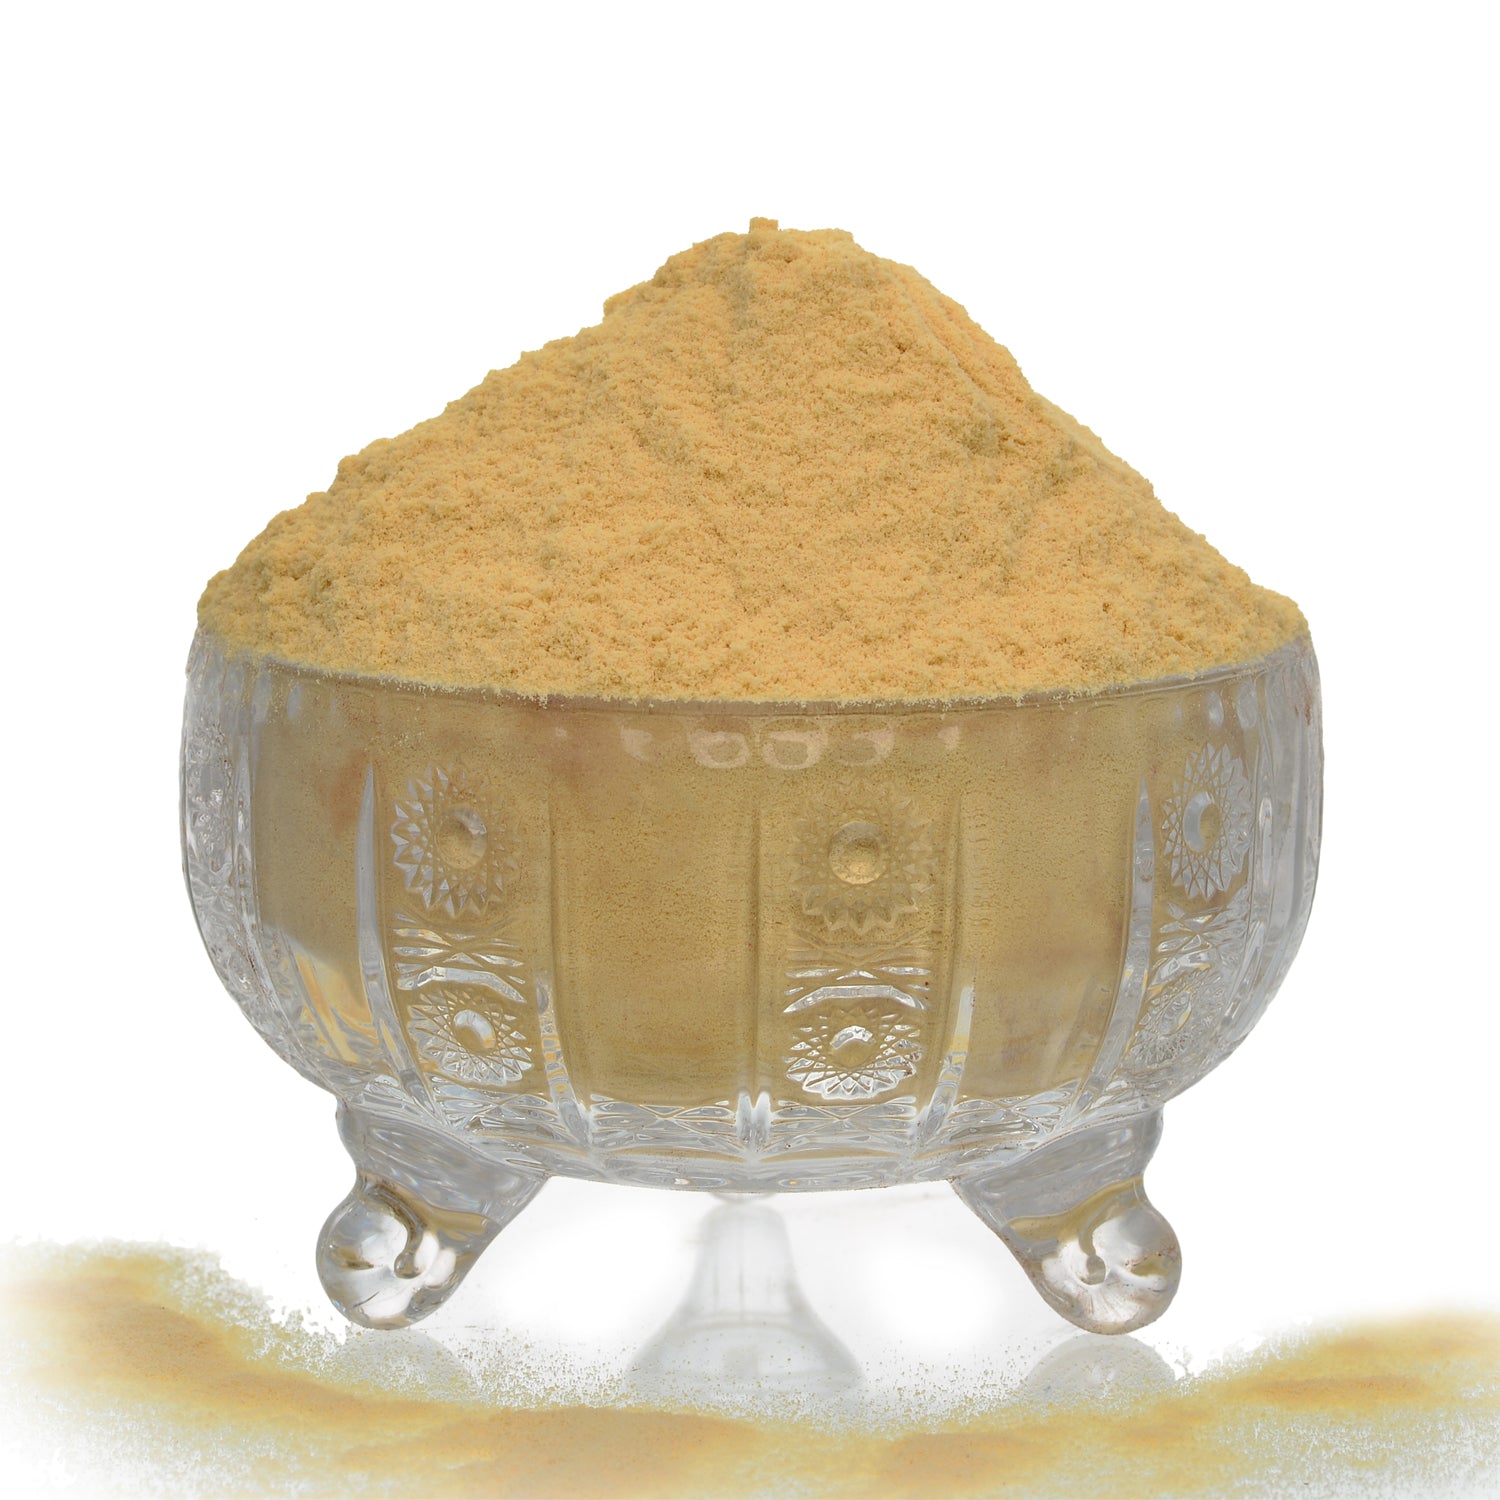 Soya Drink Powder Vegan- Non GMO - Vanilla-300g